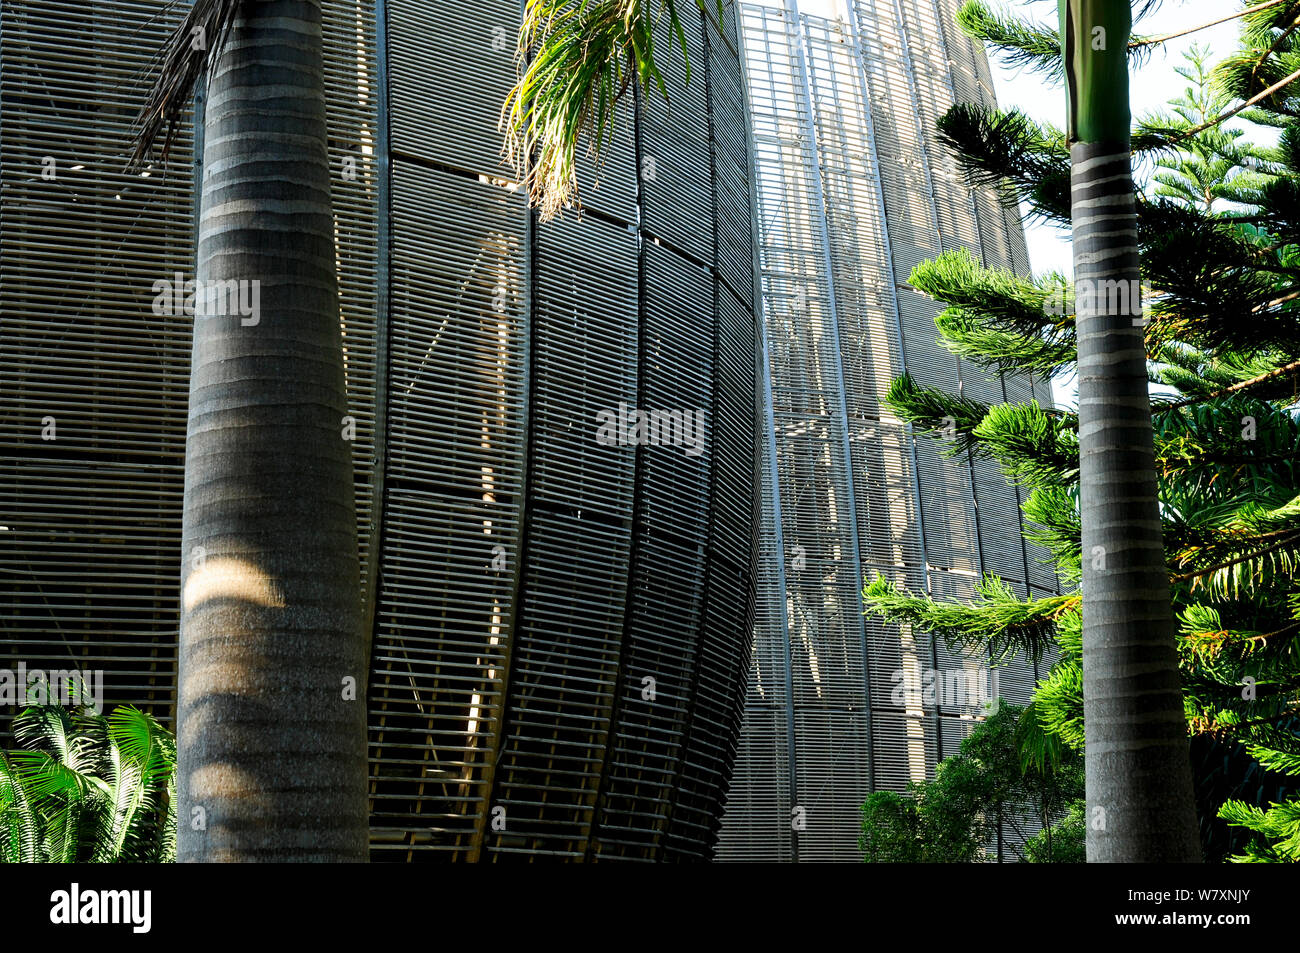 Tjibaou Kulturzentrum von Renzo Piano entworfen. Das Gebäude ist so konzipiert, dass es mit den umliegenden Wald integriert werden. Noumea, Neukaledonien, September 2008. Stockfoto